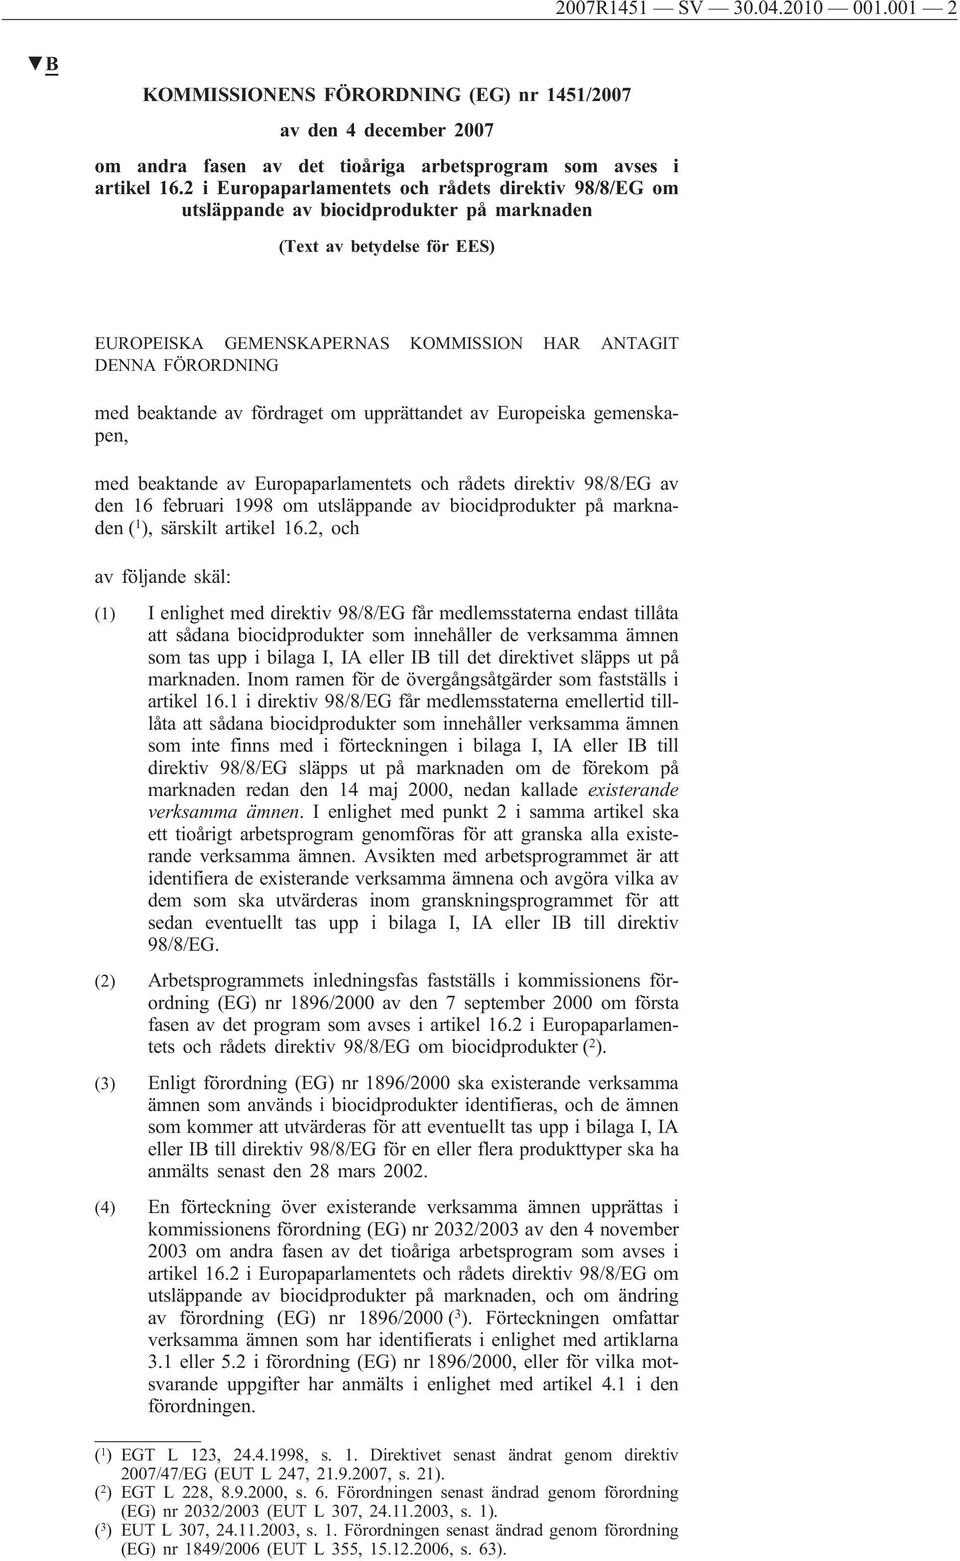 beaktande av fördraget om upprättandet av Europeiska gemenskapen, med beaktande av Europaparlamentets och rådets direktiv 98/8/EG av den 16 februari 1998 om utsläppande av biocidprodukter på